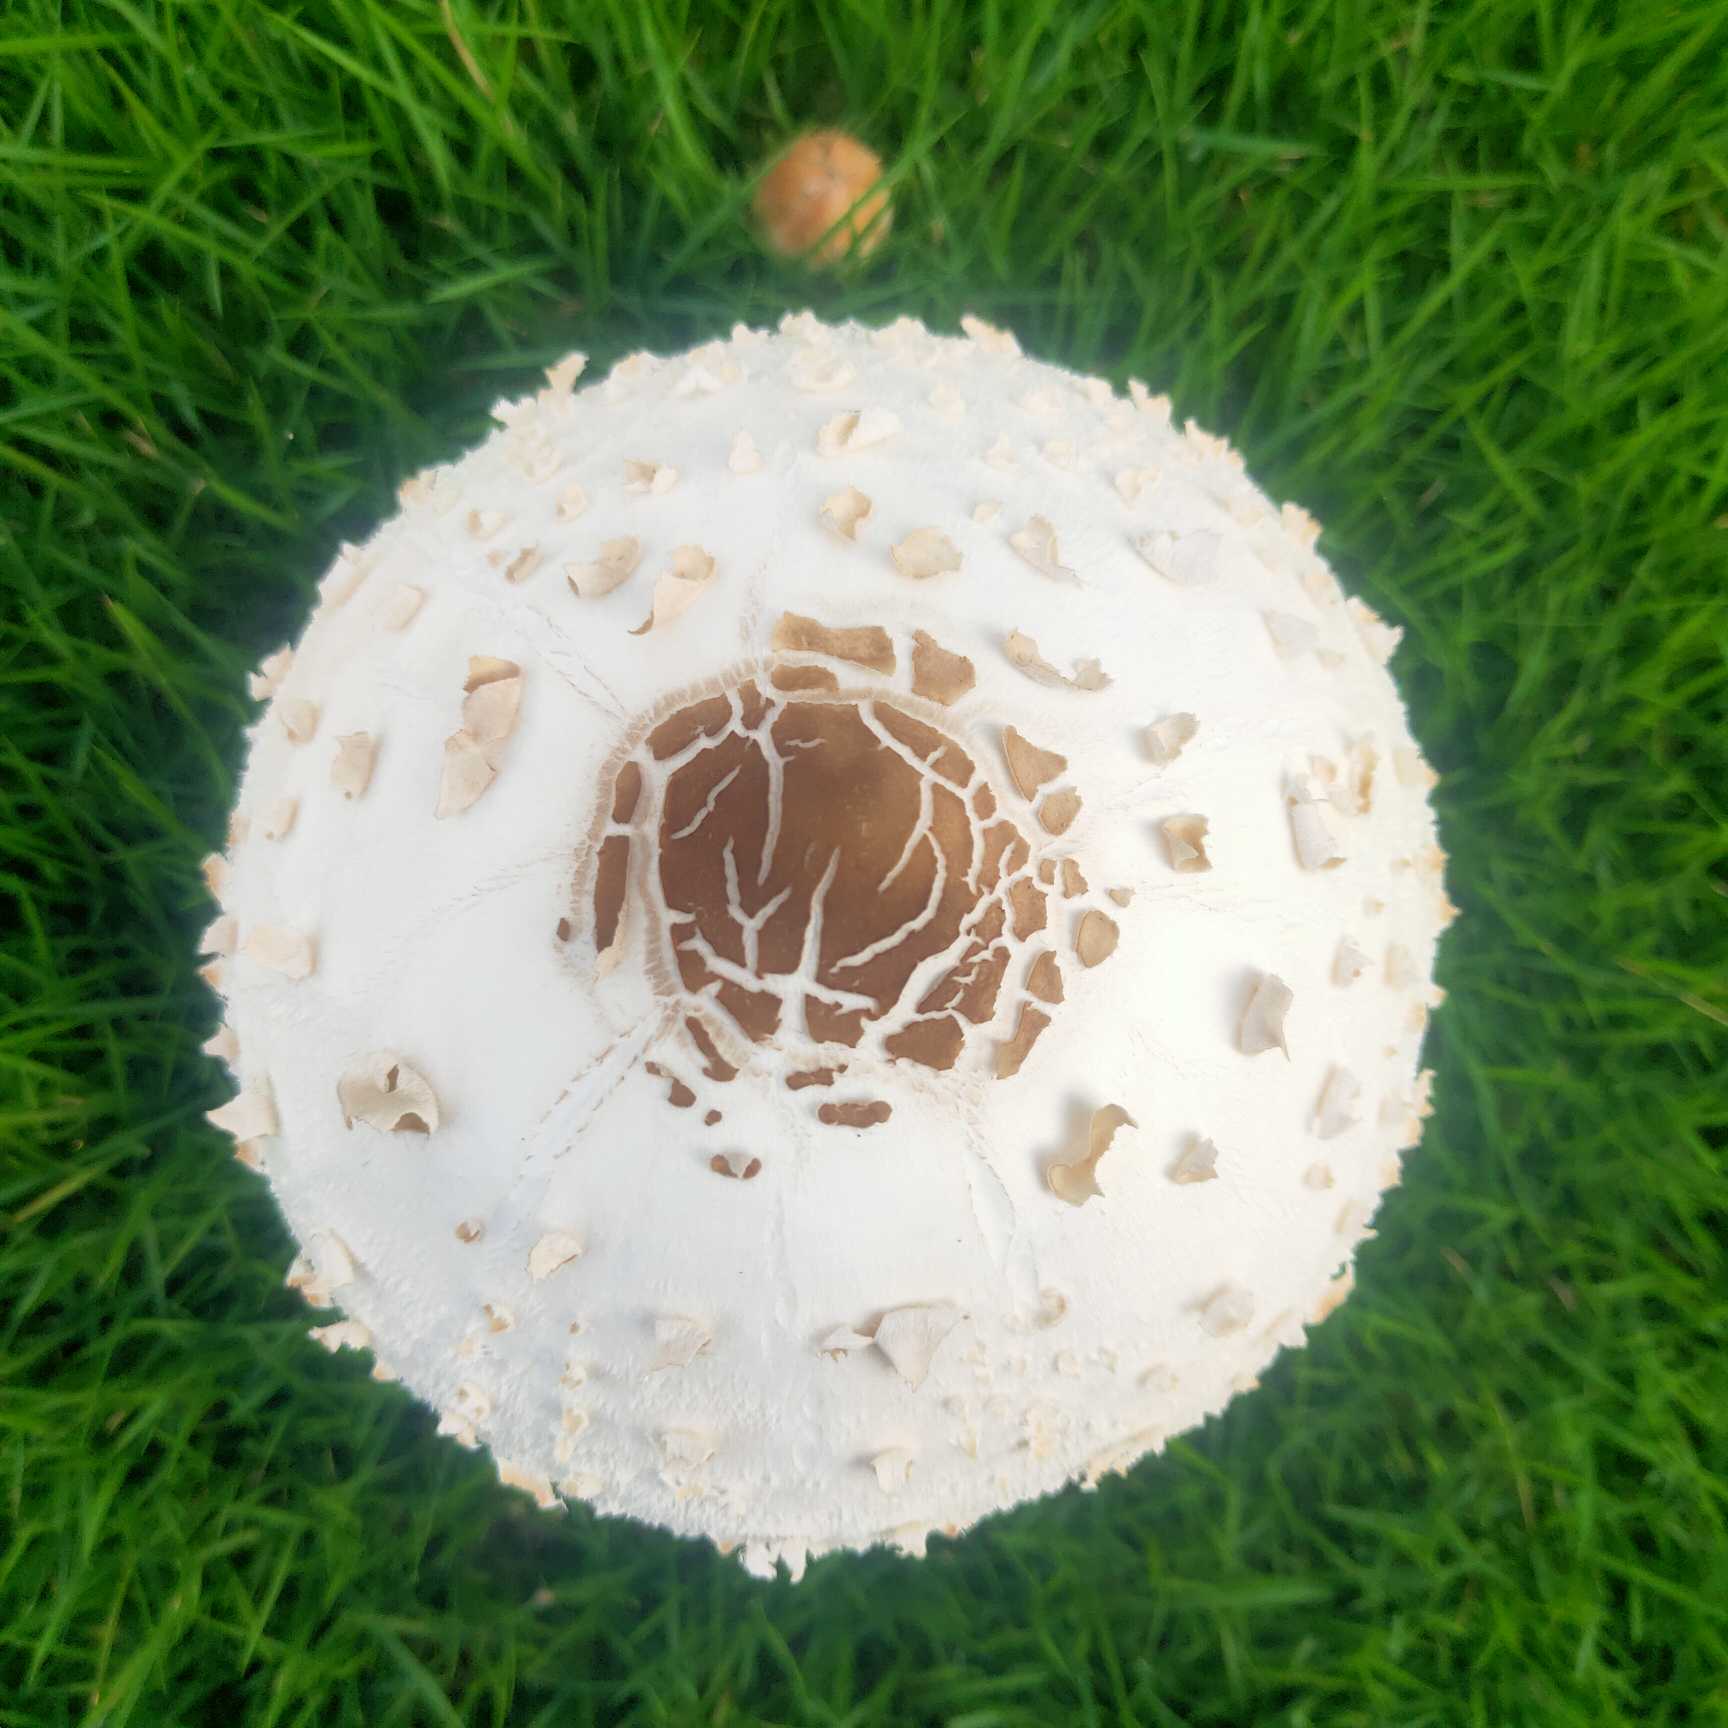 有坛友知道这草坪上新长出来的蘑菇能吃吗?